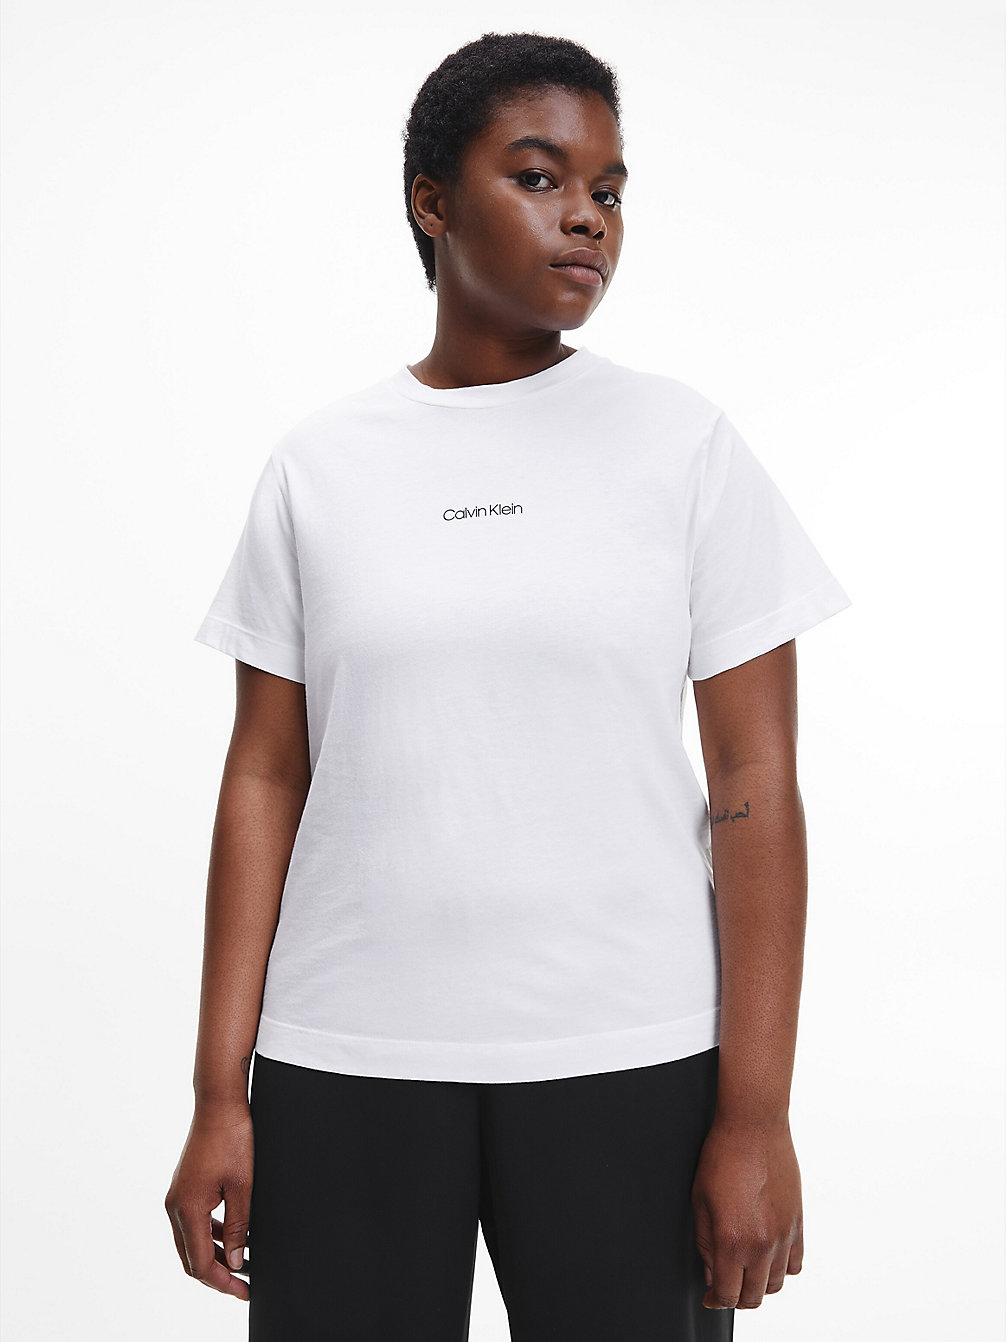 BRIGHT WHITE T-Shirt Aus Bio-Baumwolle In Großen Größen undefined Damen Calvin Klein